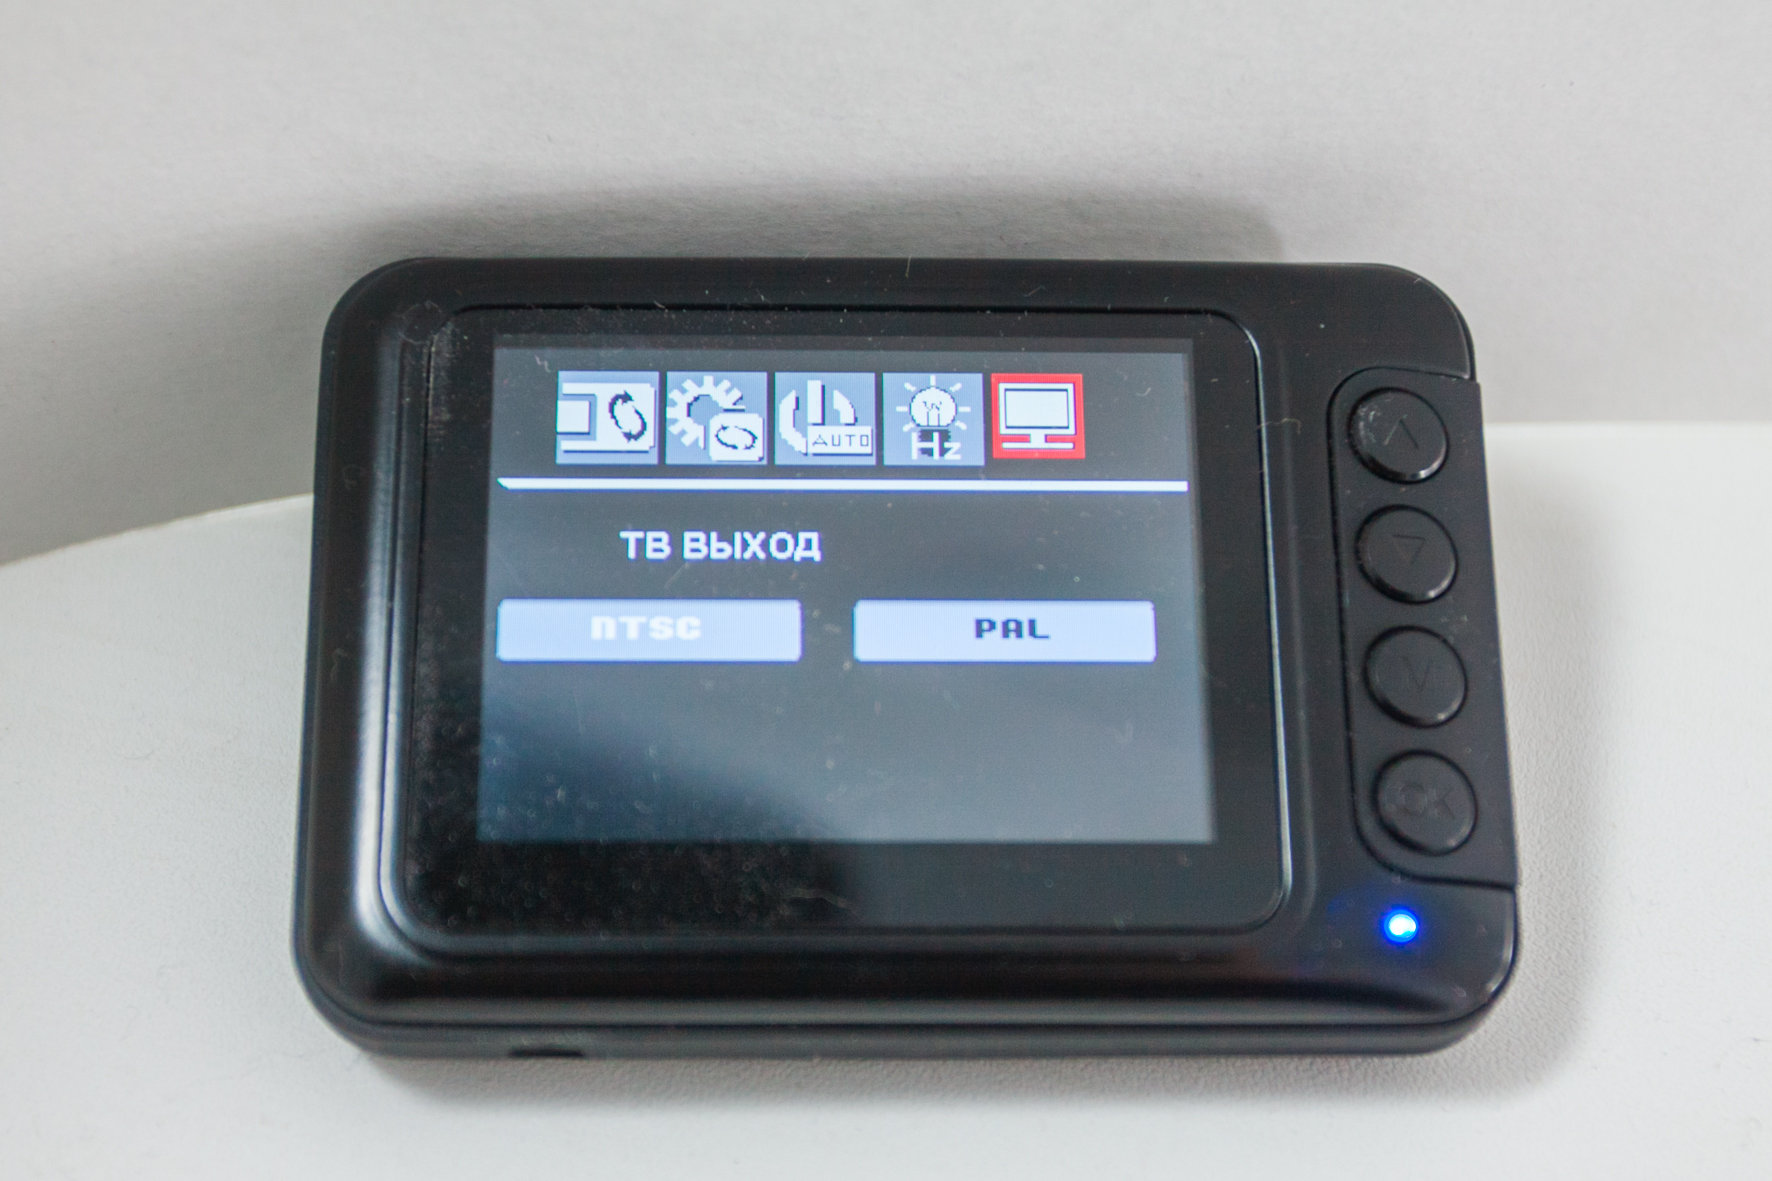 Обзор автомобильного видеорегистратора Highscreen Black Box Full HD